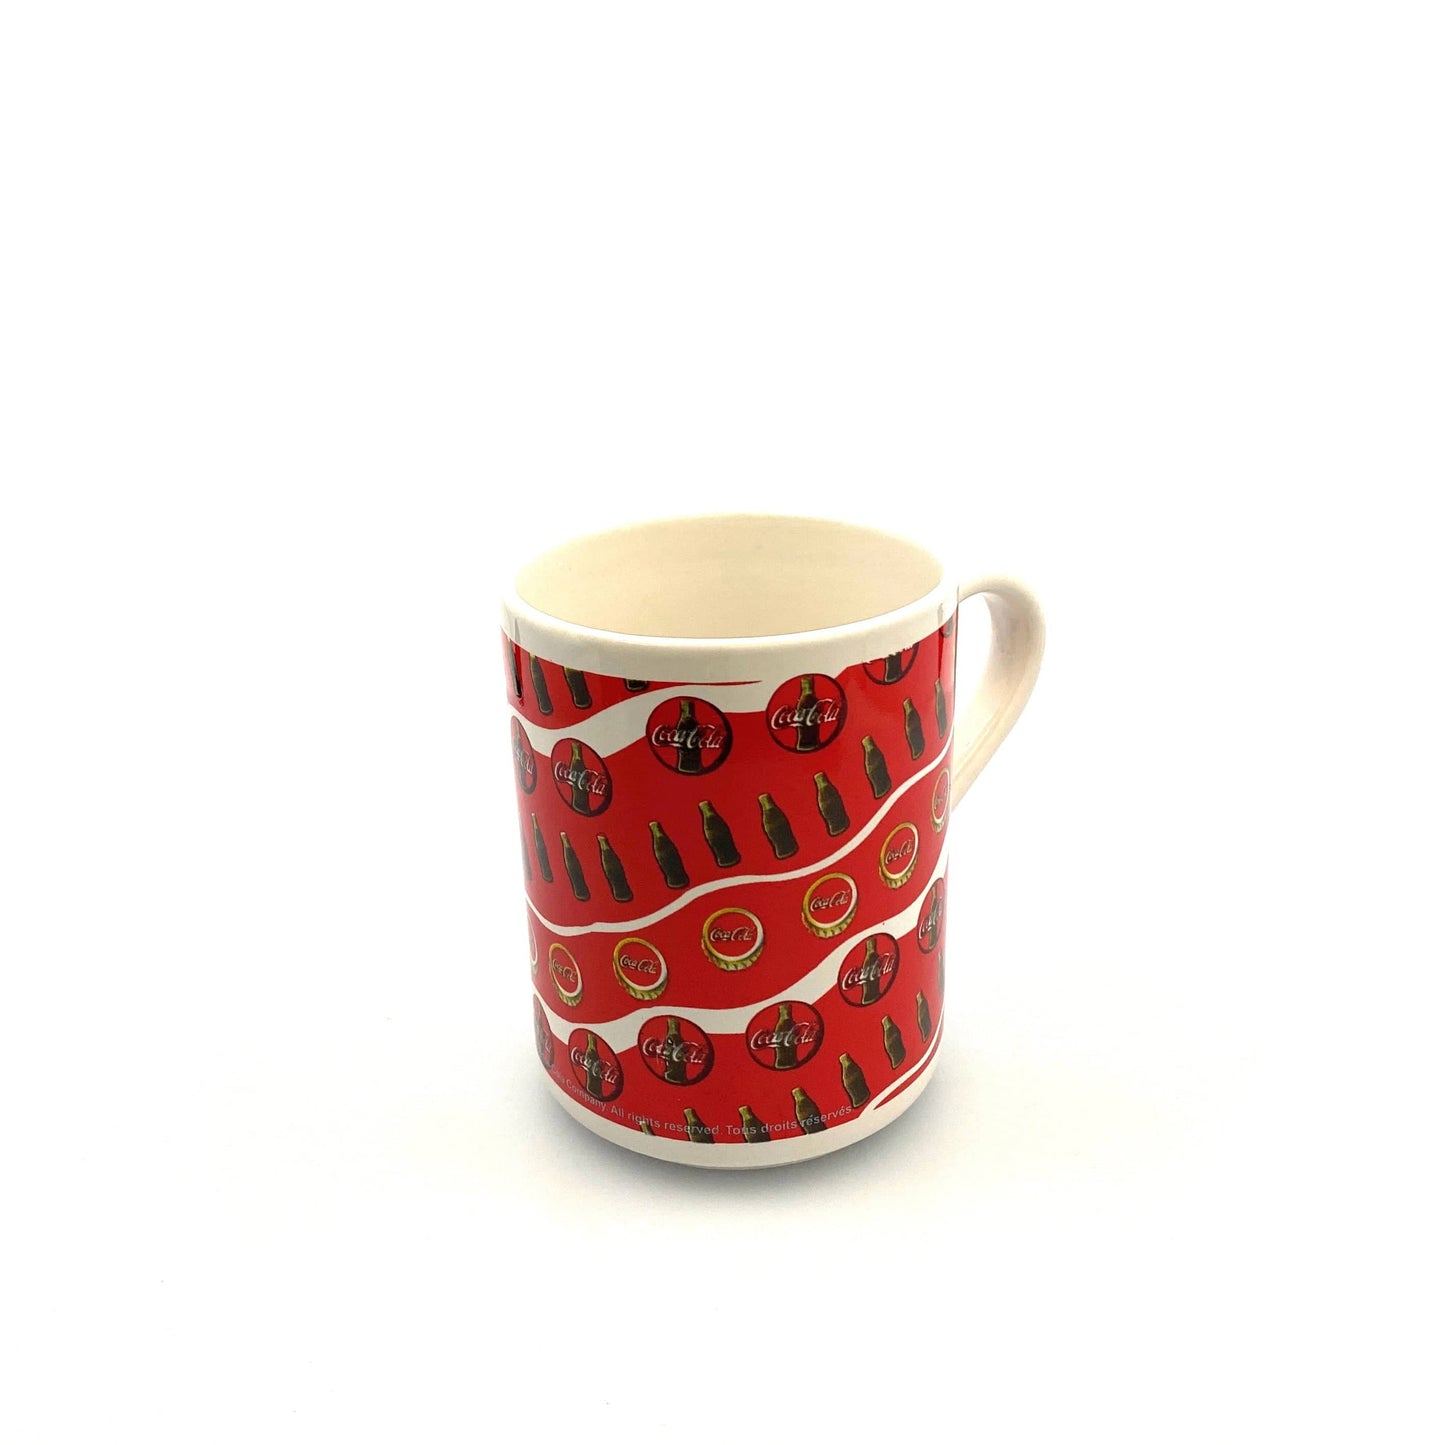 Coca-Cola Logo Red White Ceramic Coffee Cup Mug 1997